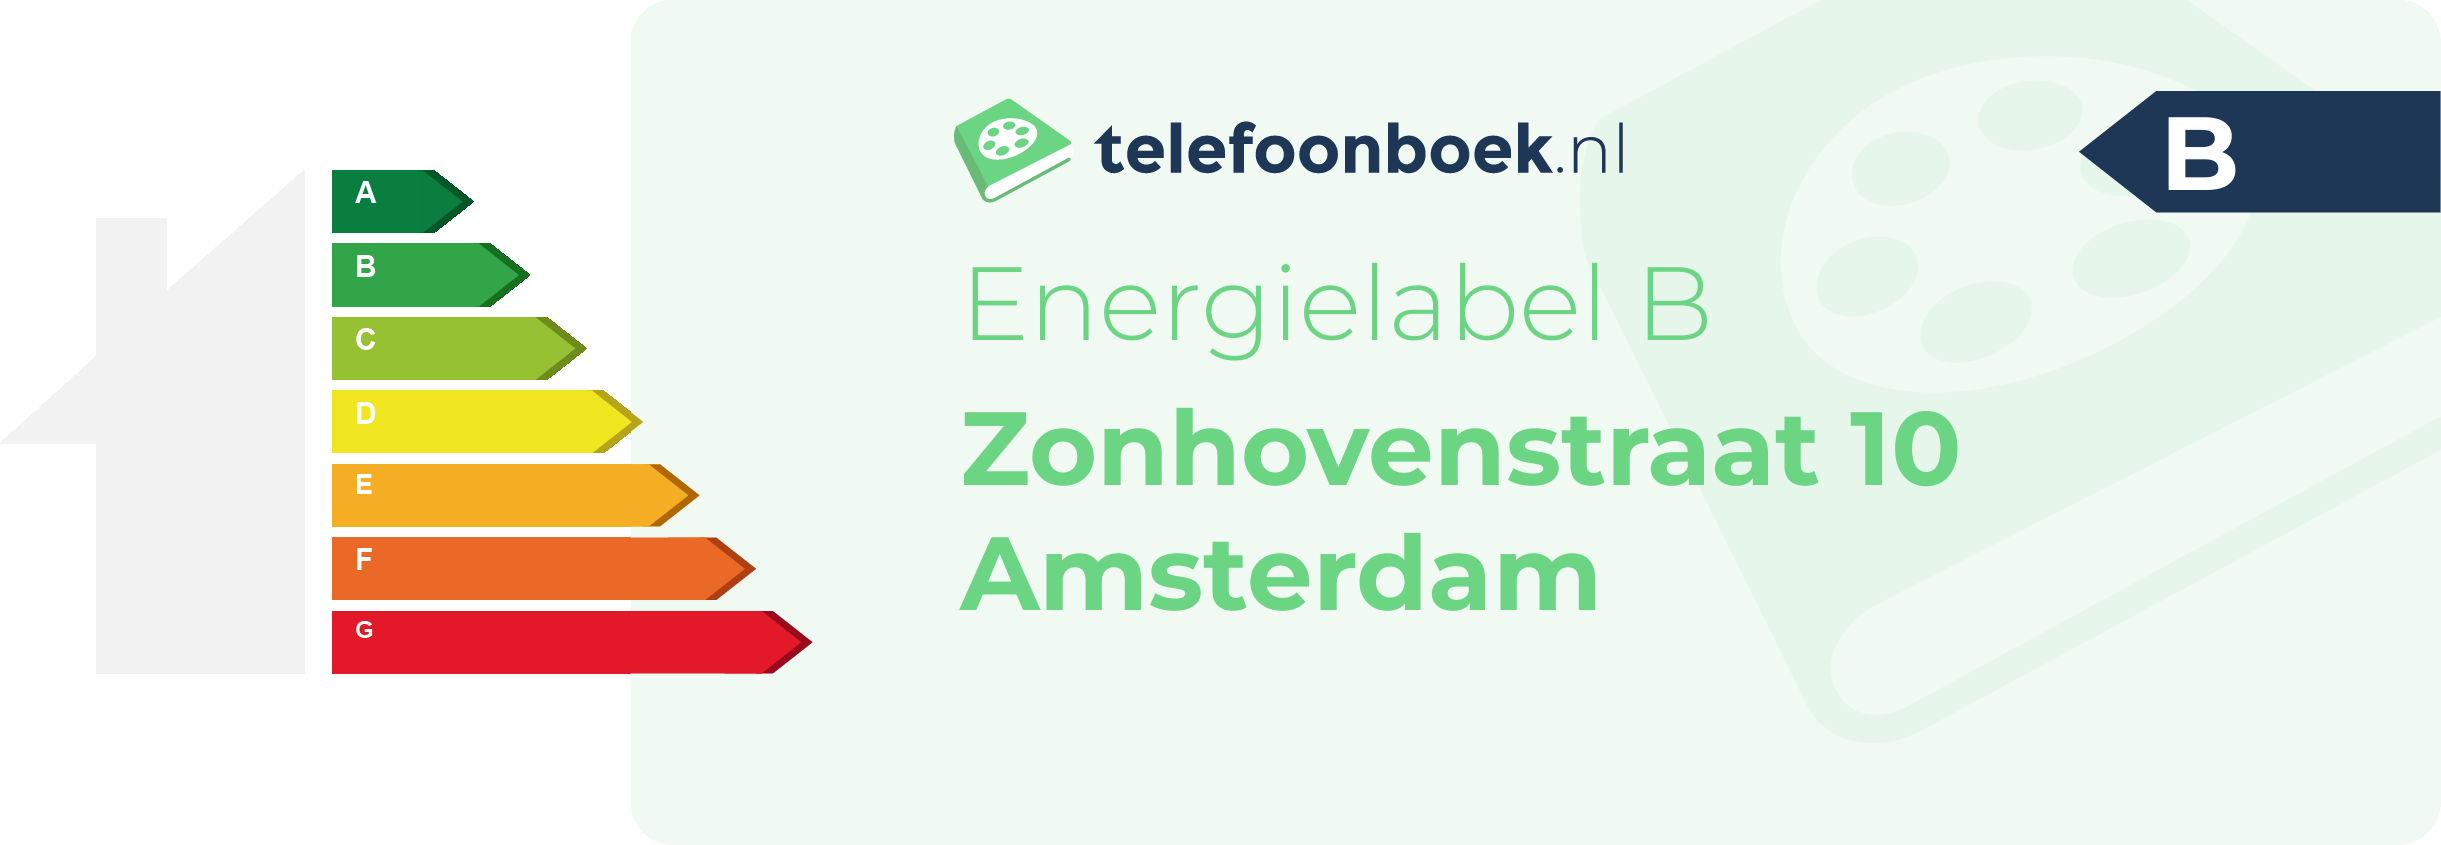 Energielabel Zonhovenstraat 10 Amsterdam